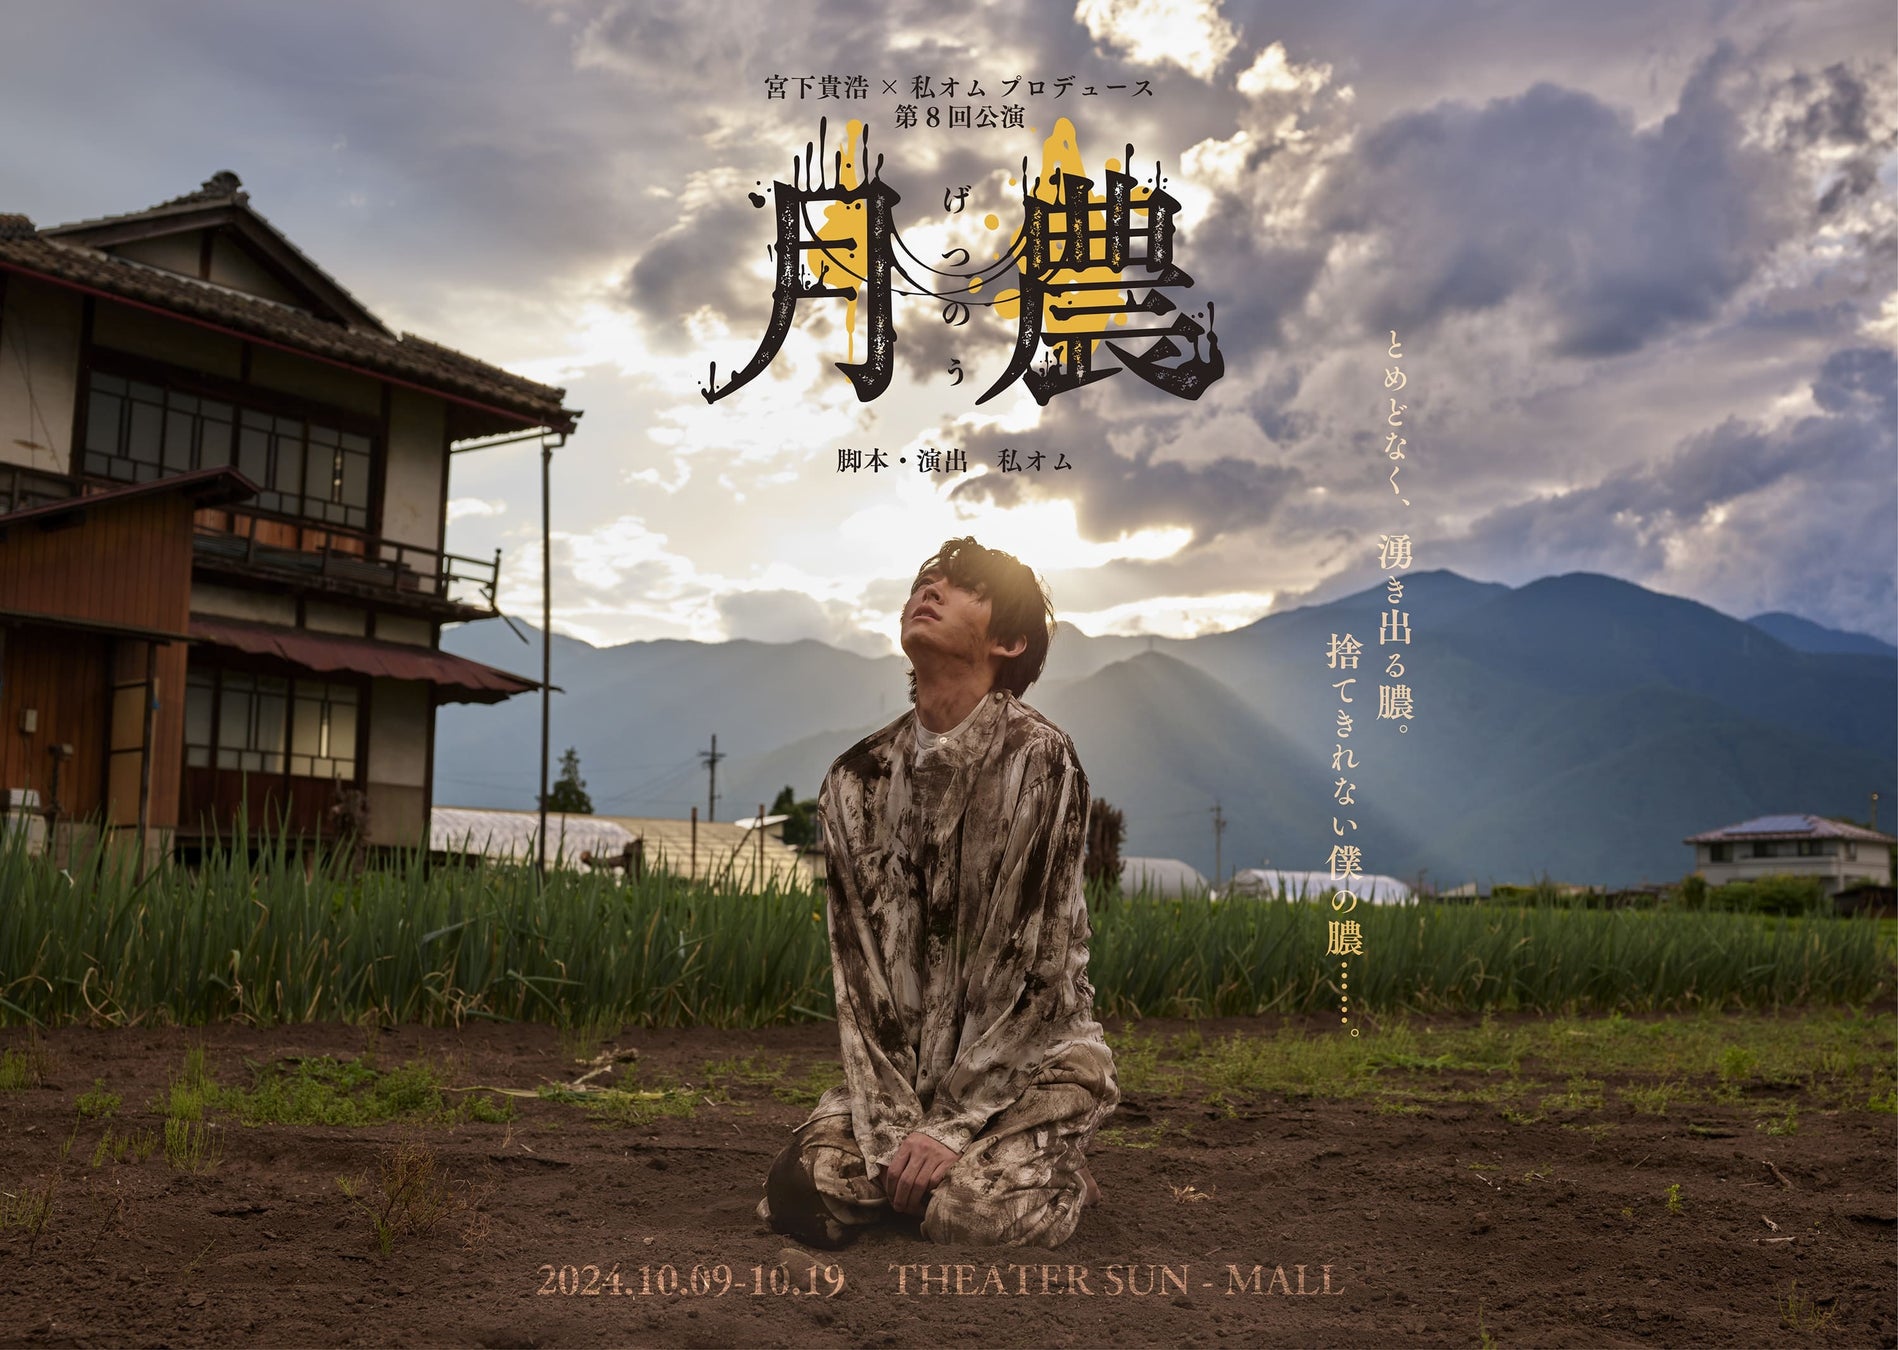 谷村有美の2ndアルバム『Face』初のアナログ盤とリマスタリング盤CDが8月3日（土）同時発売！